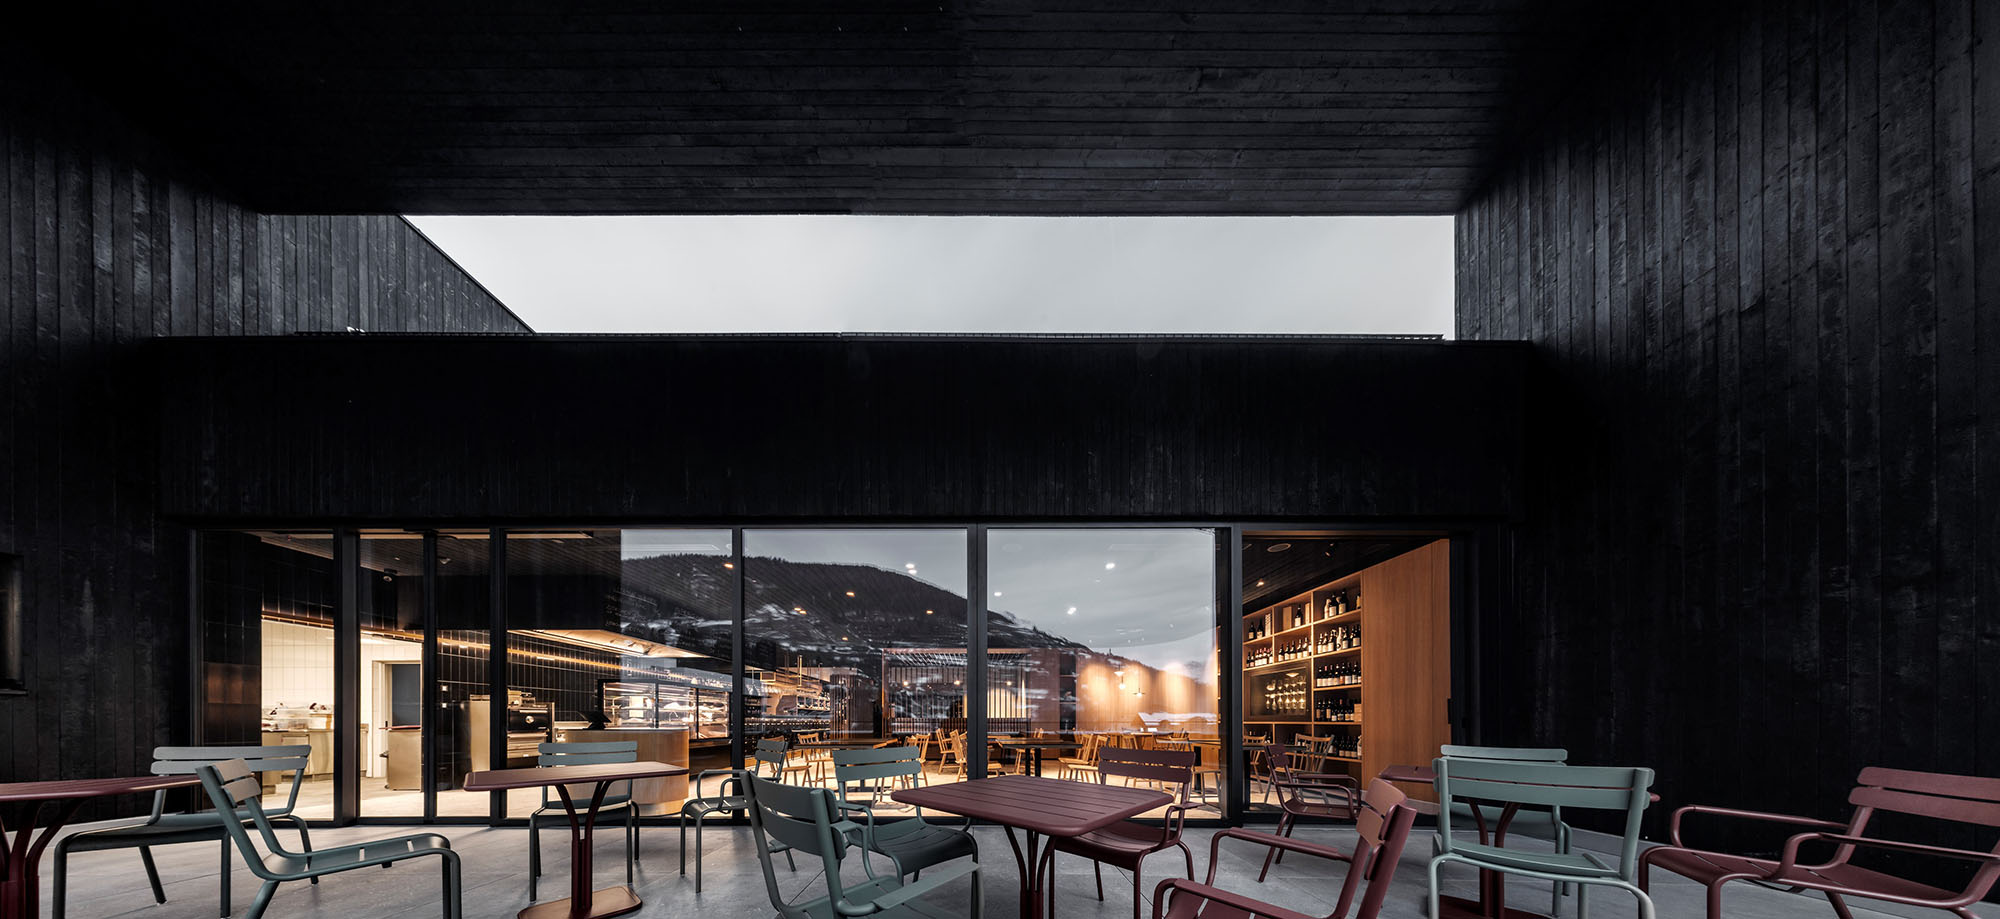 酒吧設計,酒吧設計案例,KUP - ARCH Architekten architetti,酒吧設計方案,意大利,葡萄酒零售店,餐廳,綜合店